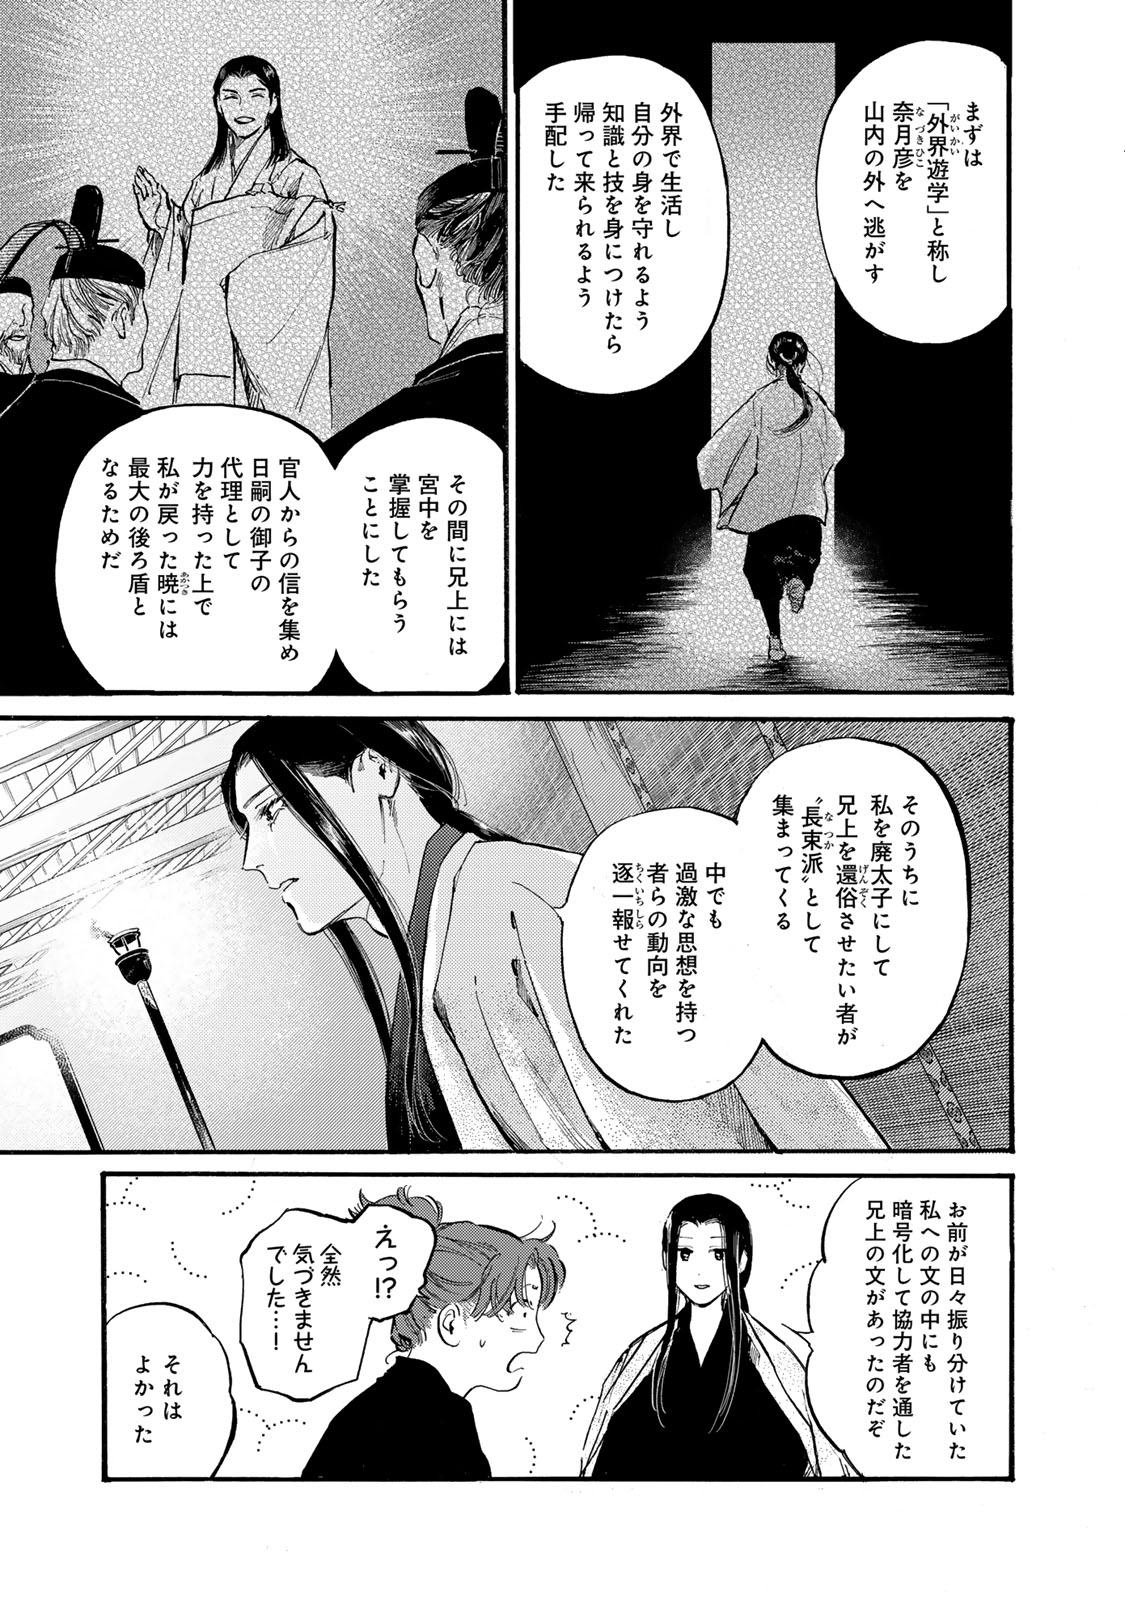 Karasu wa Aruji wo Erabanai - Chapter 43 - Page 9